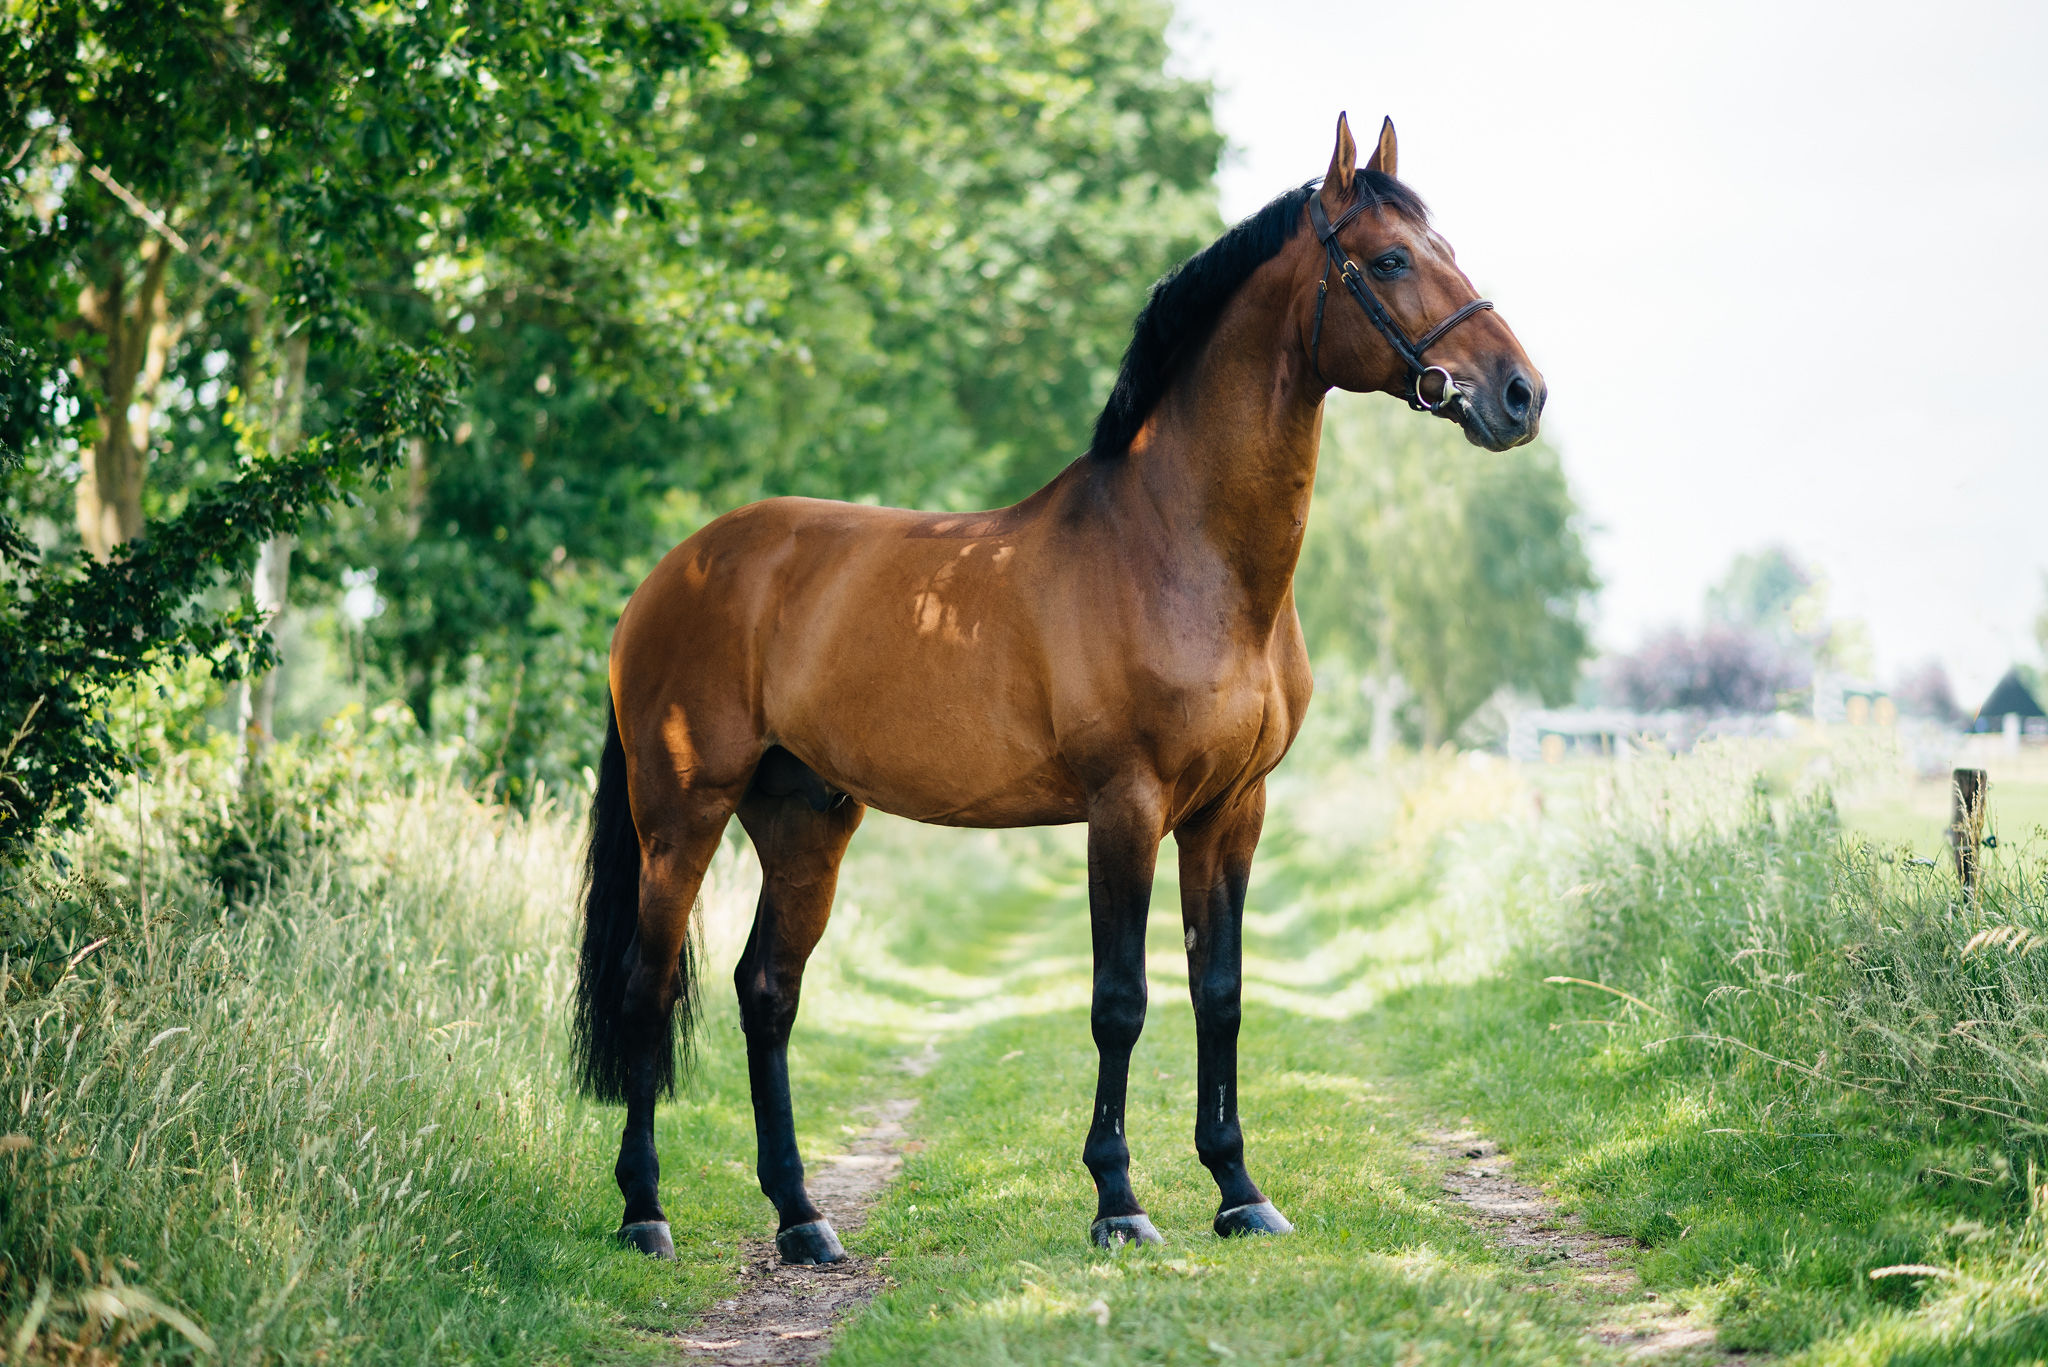 Juulia Jyläs väljer Nutrolin® HORSE-serien till sina hästar